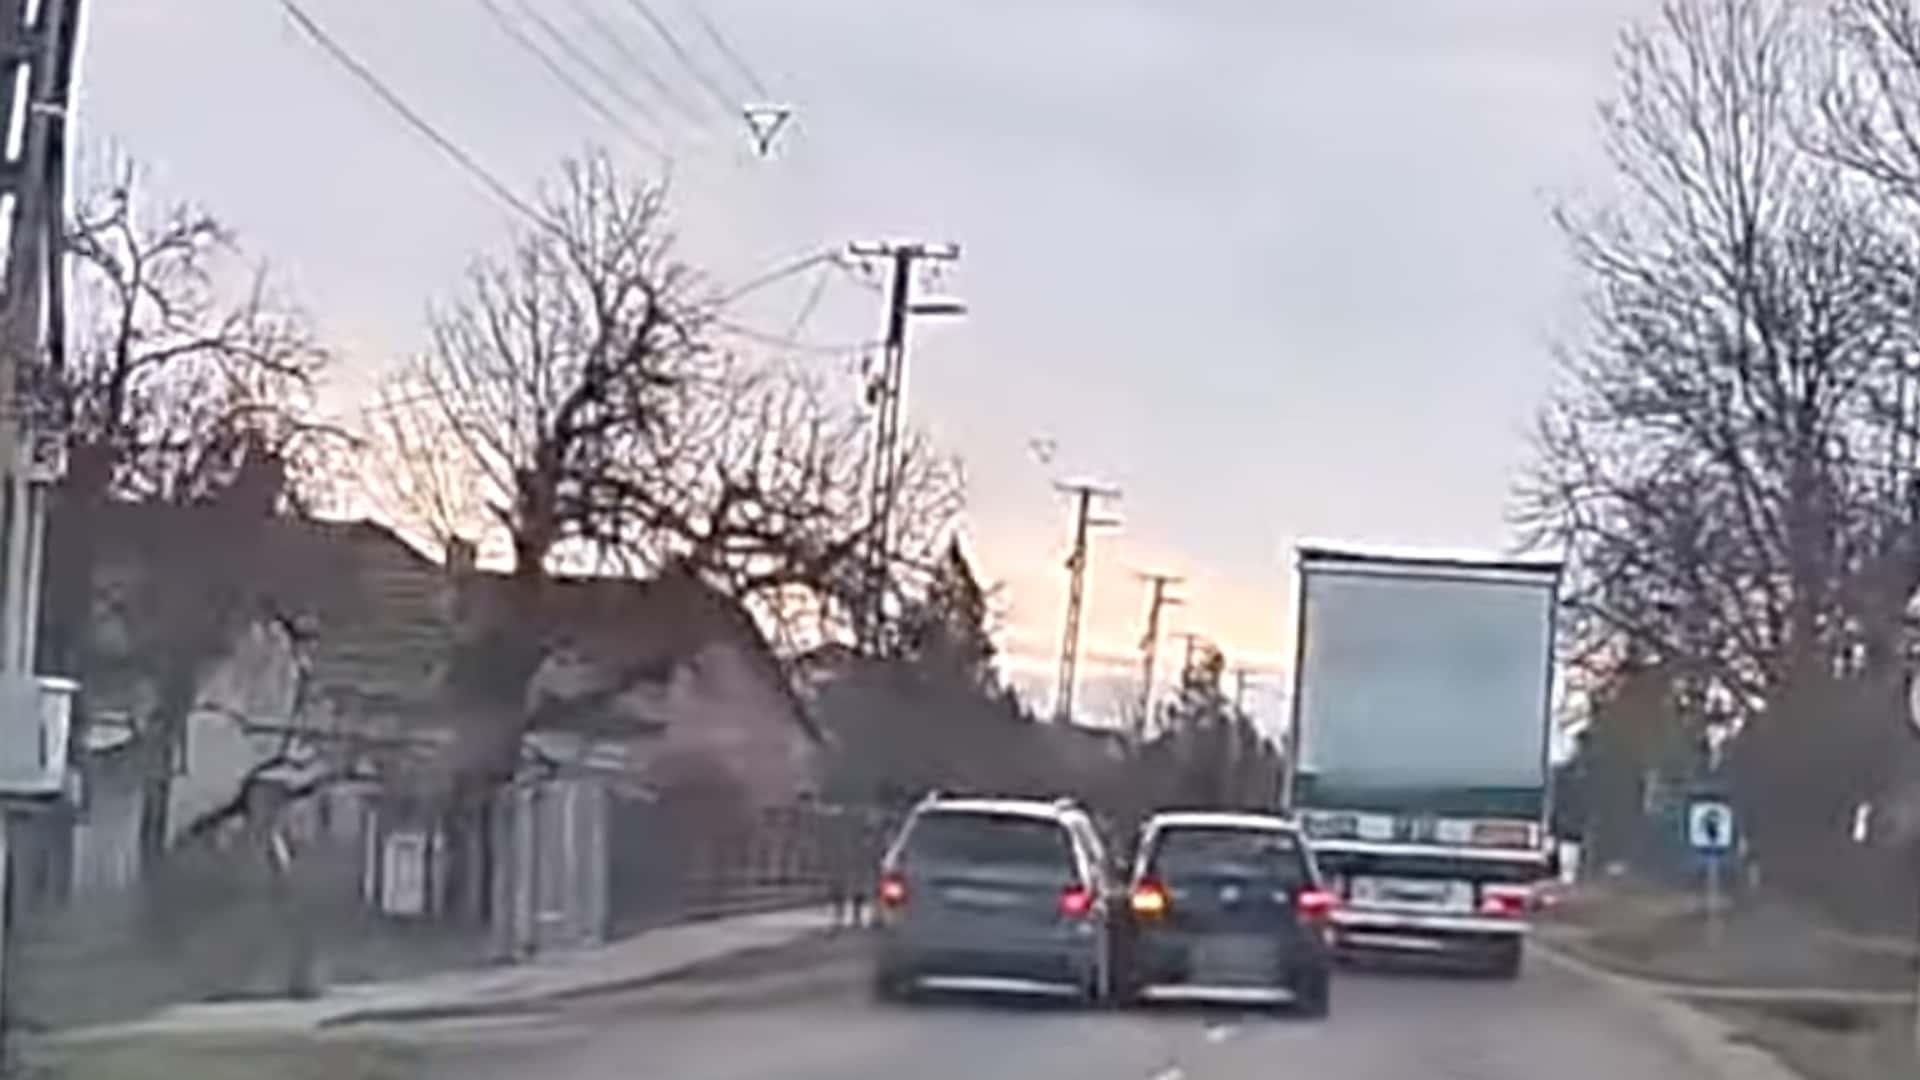 egyszerre akartak kamiont előzni a záróvonalon, végül összeütközött a két autós